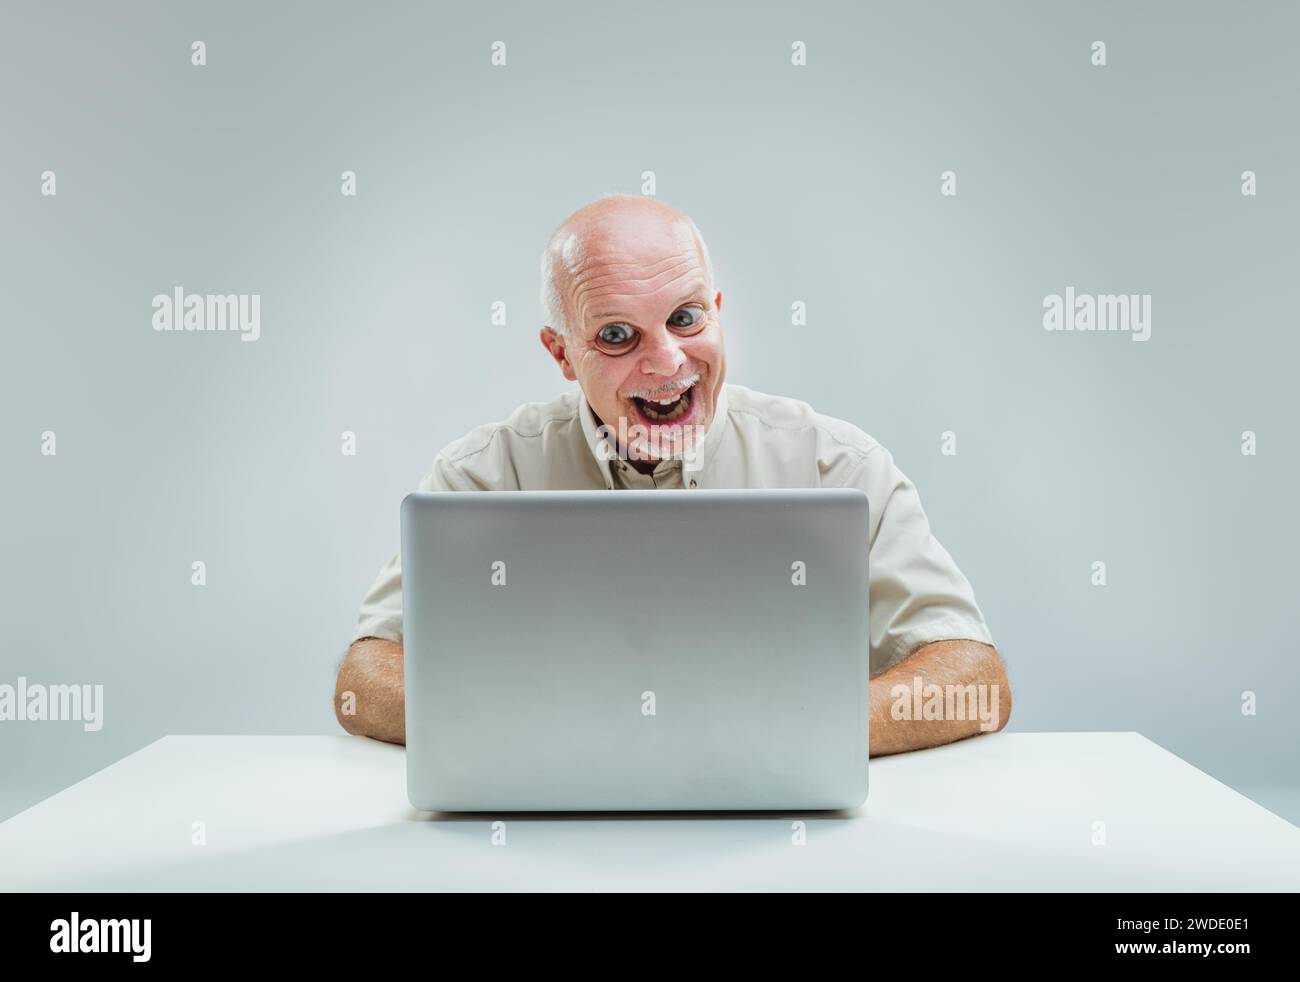 Der fröhliche Ausdruck des Mannes, während er auf den Laptop blickt, deutet darauf hin, dass er etwas herrlich verlockendes gefunden hat Stockfoto